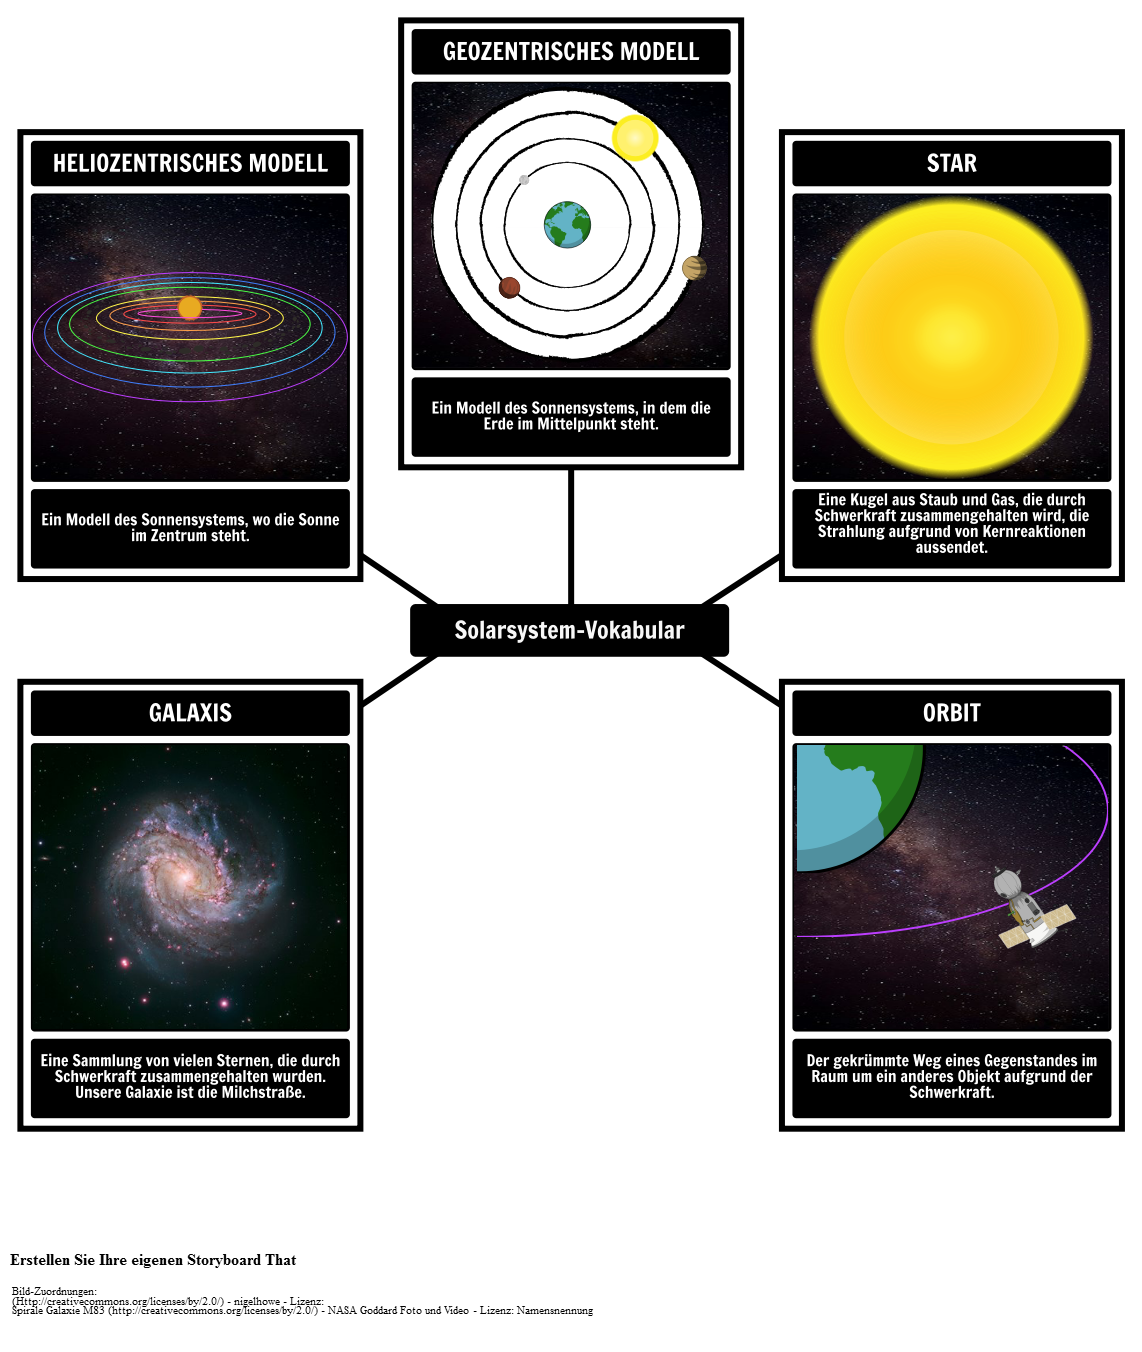 Solarsystem-Vokabular